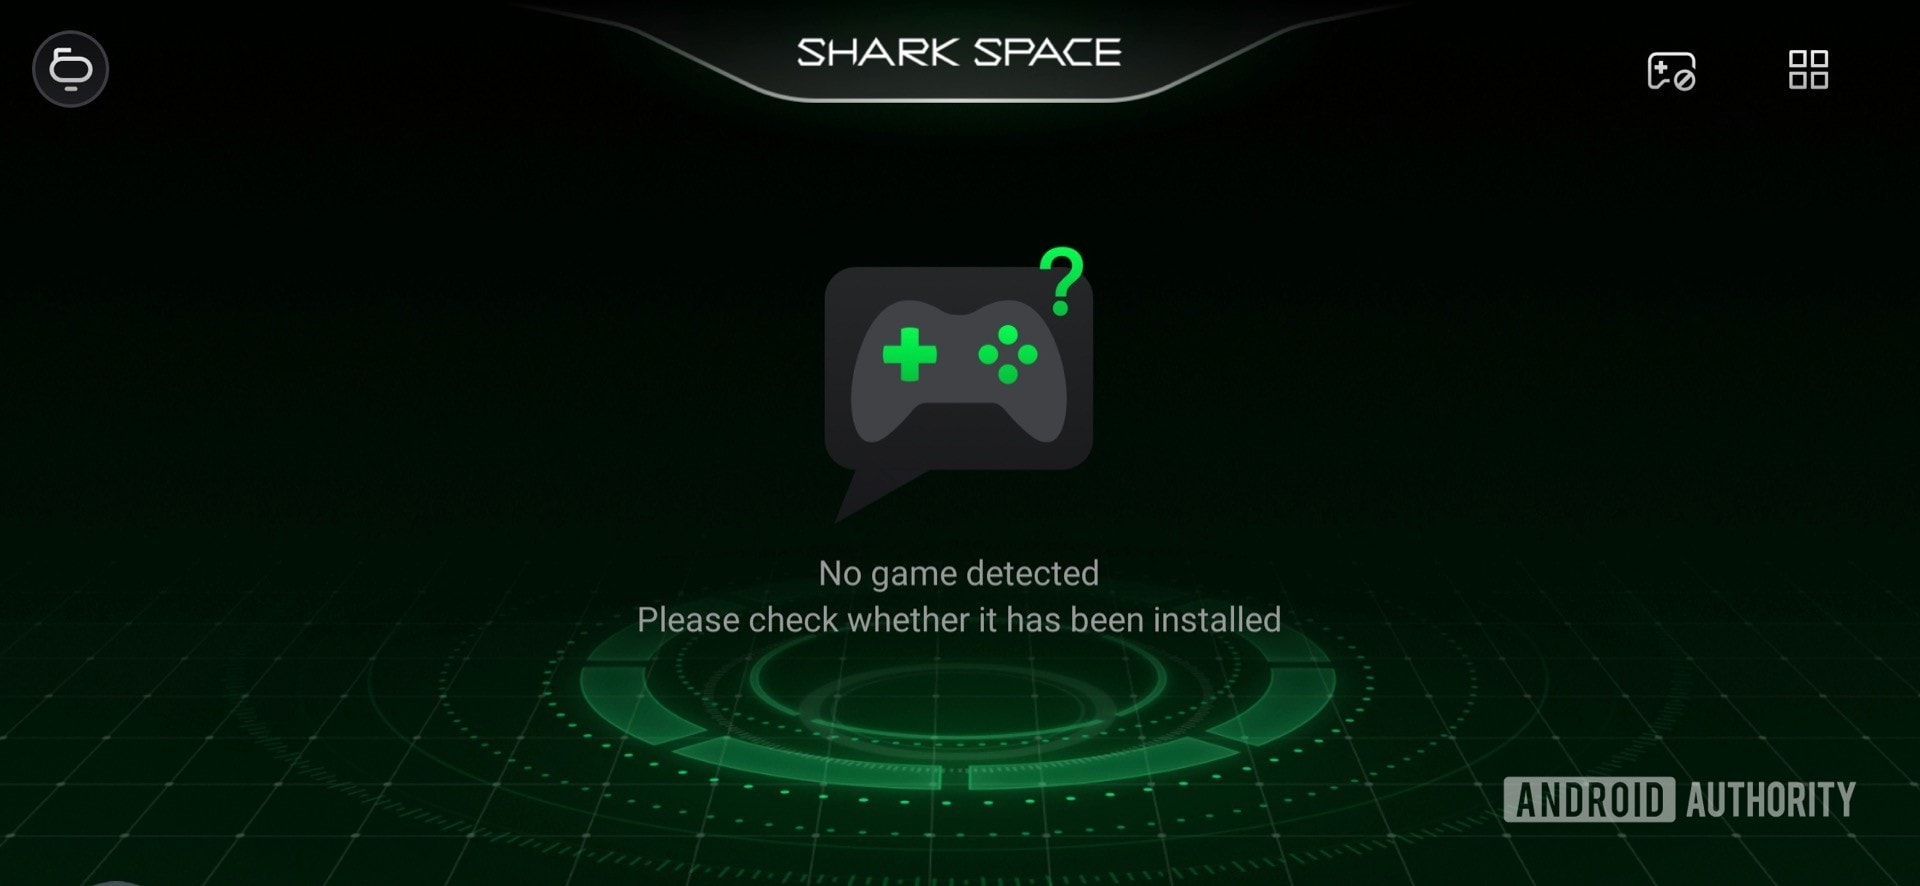 黑鲨2评论鲨鱼空间控制器设置